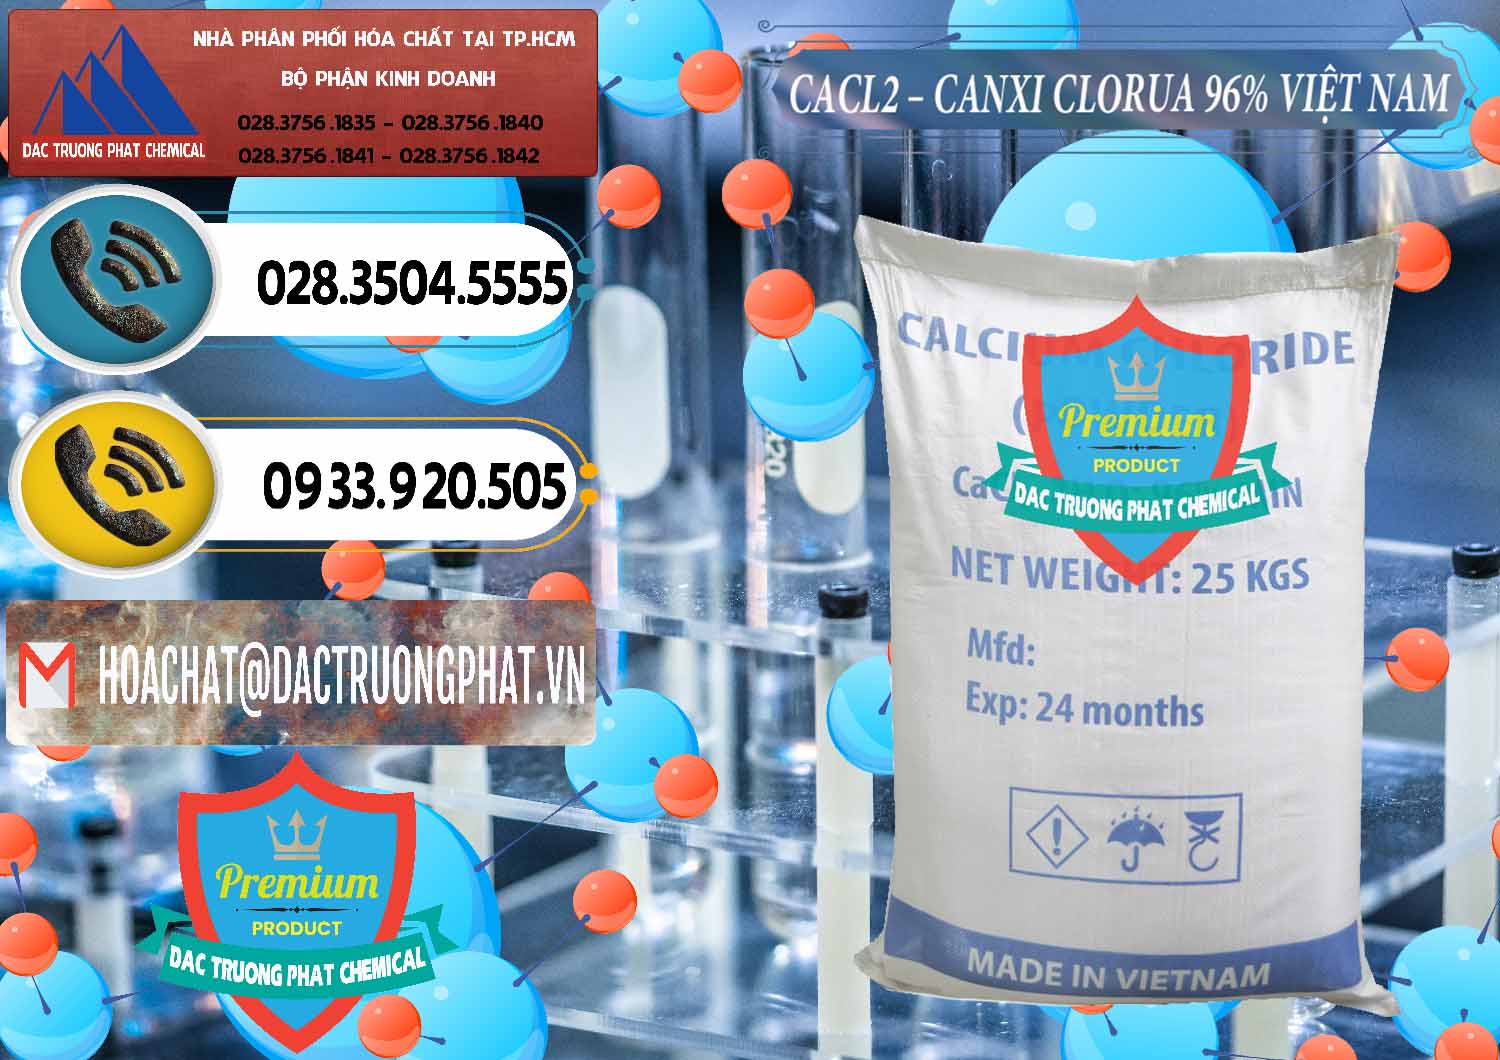 Đơn vị bán _ cung cấp CaCl2 – Canxi Clorua 96% Việt Nam - 0236 - Nơi cung cấp _ kinh doanh hóa chất tại TP.HCM - hoachatdetnhuom.vn